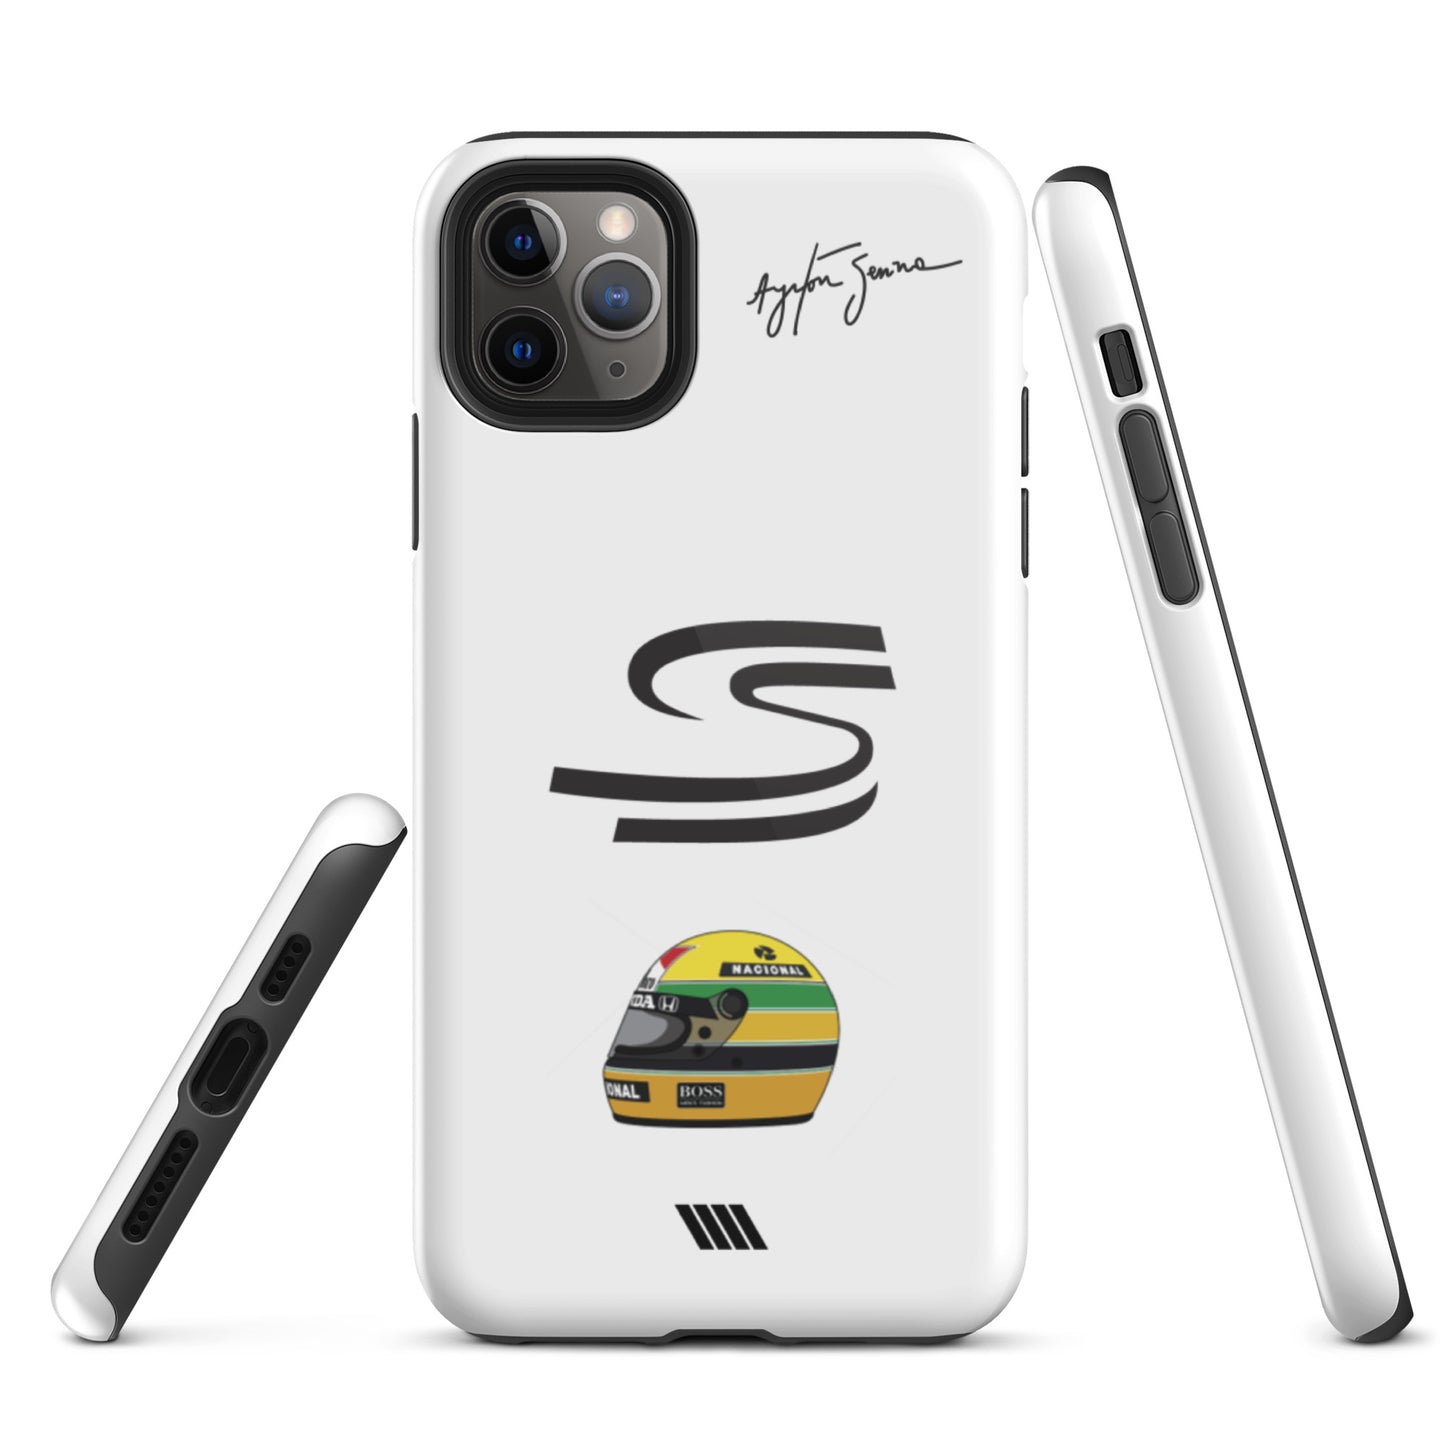 Ayrton Senna Tough iPhone case